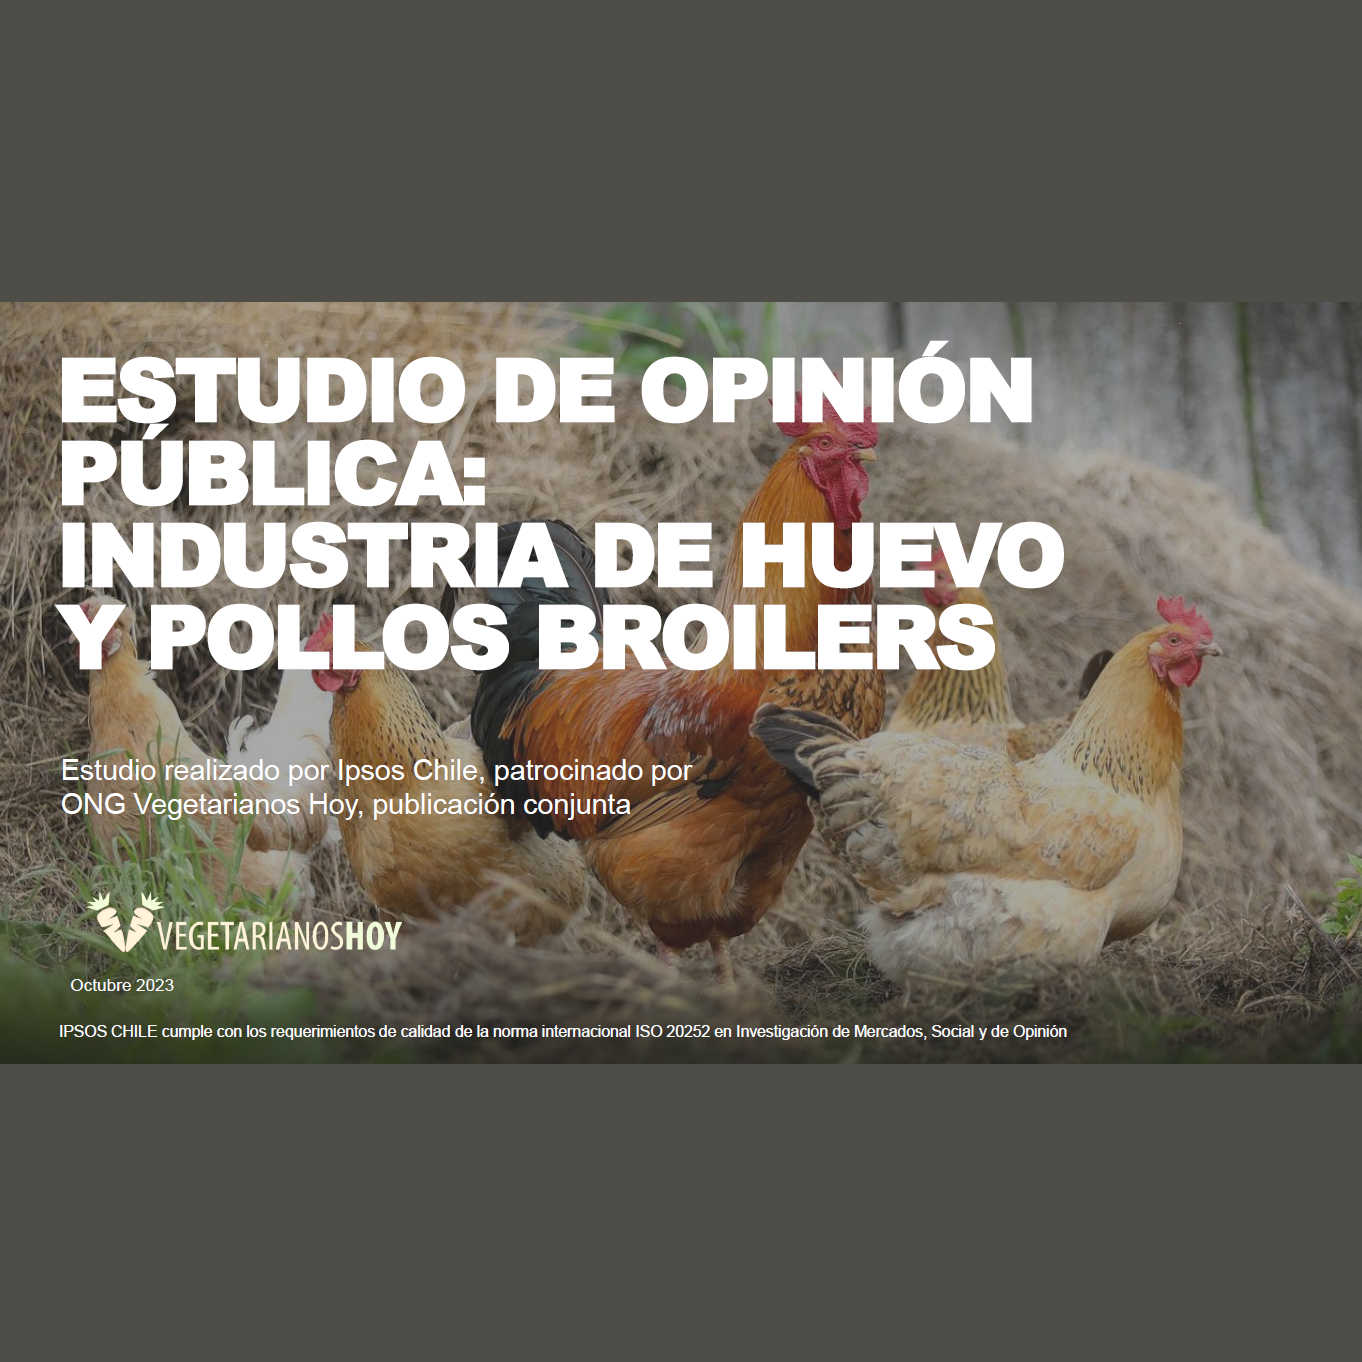 Estudio: Estudio de opinión pública – Industria de huevo y pollos Broilers